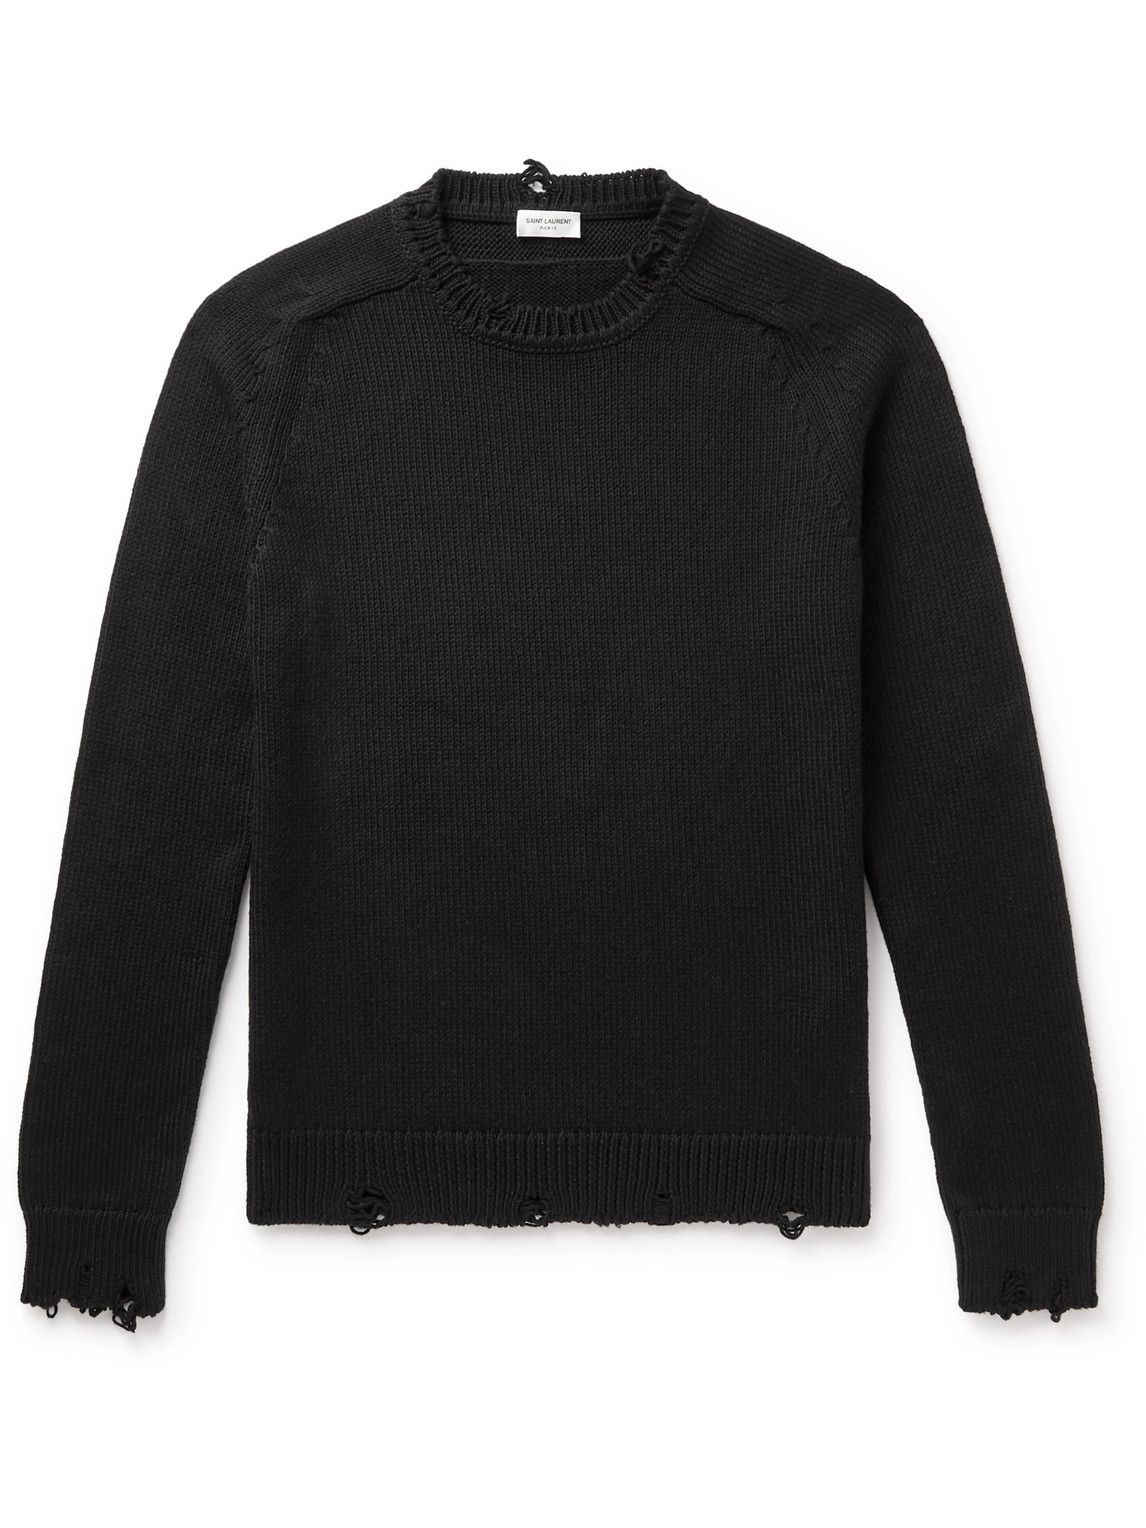 SAINT LAURENT - Distressed Cotton Sweater - Black Saint Laurent